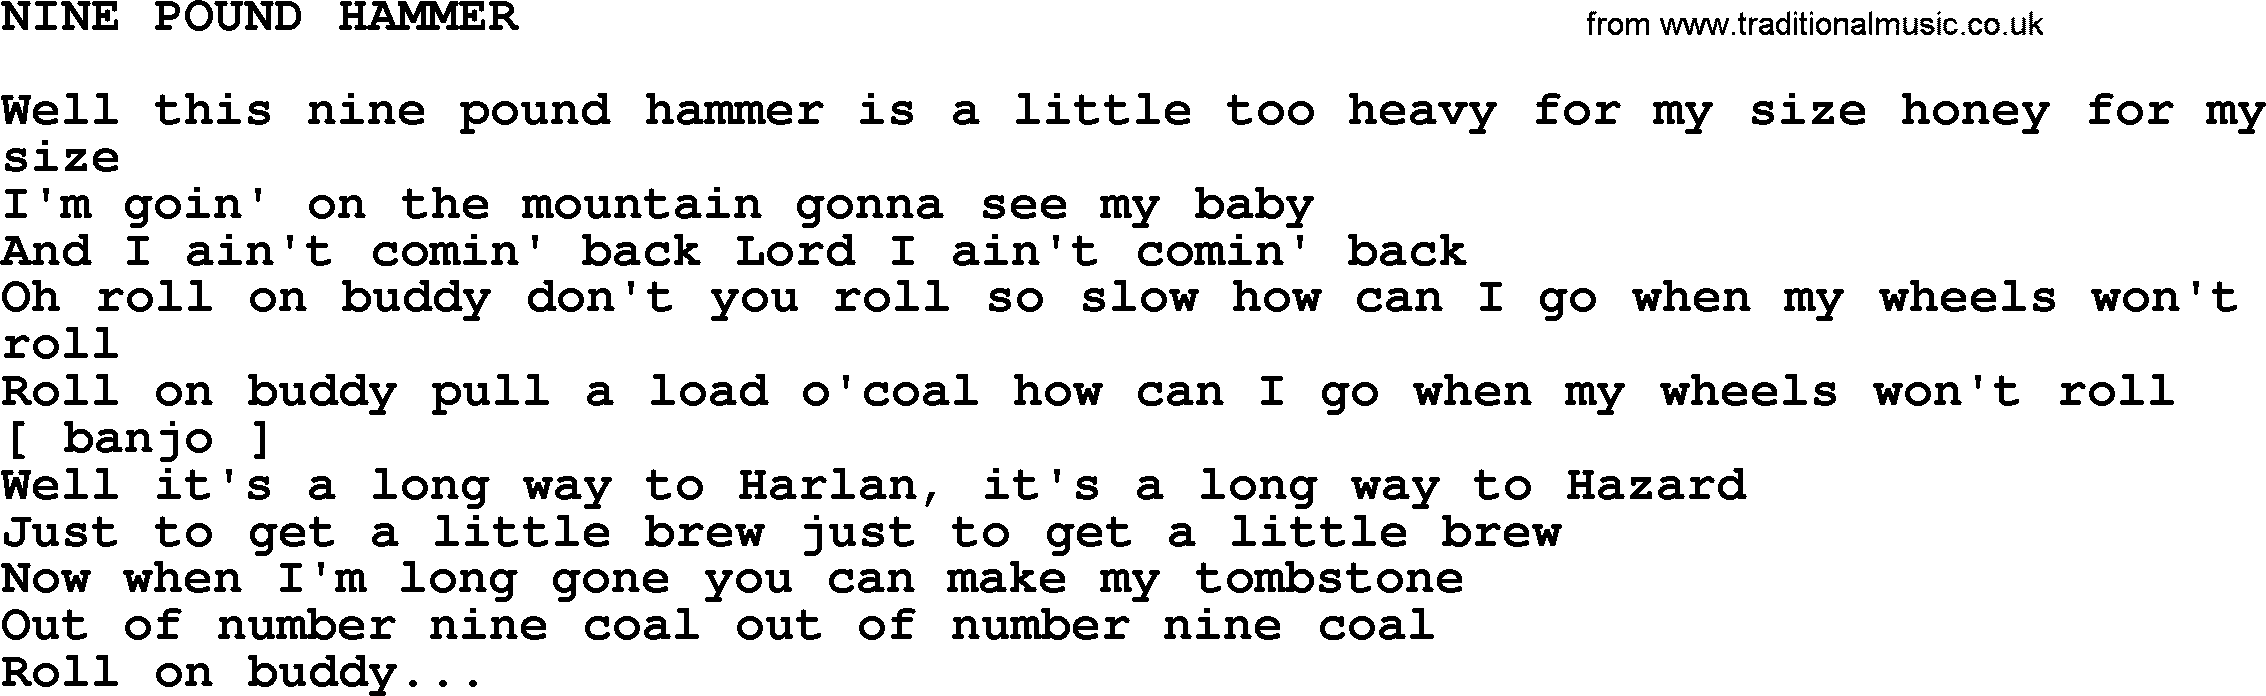 Johnny Cash song Nine Pound Hammer.txt lyrics